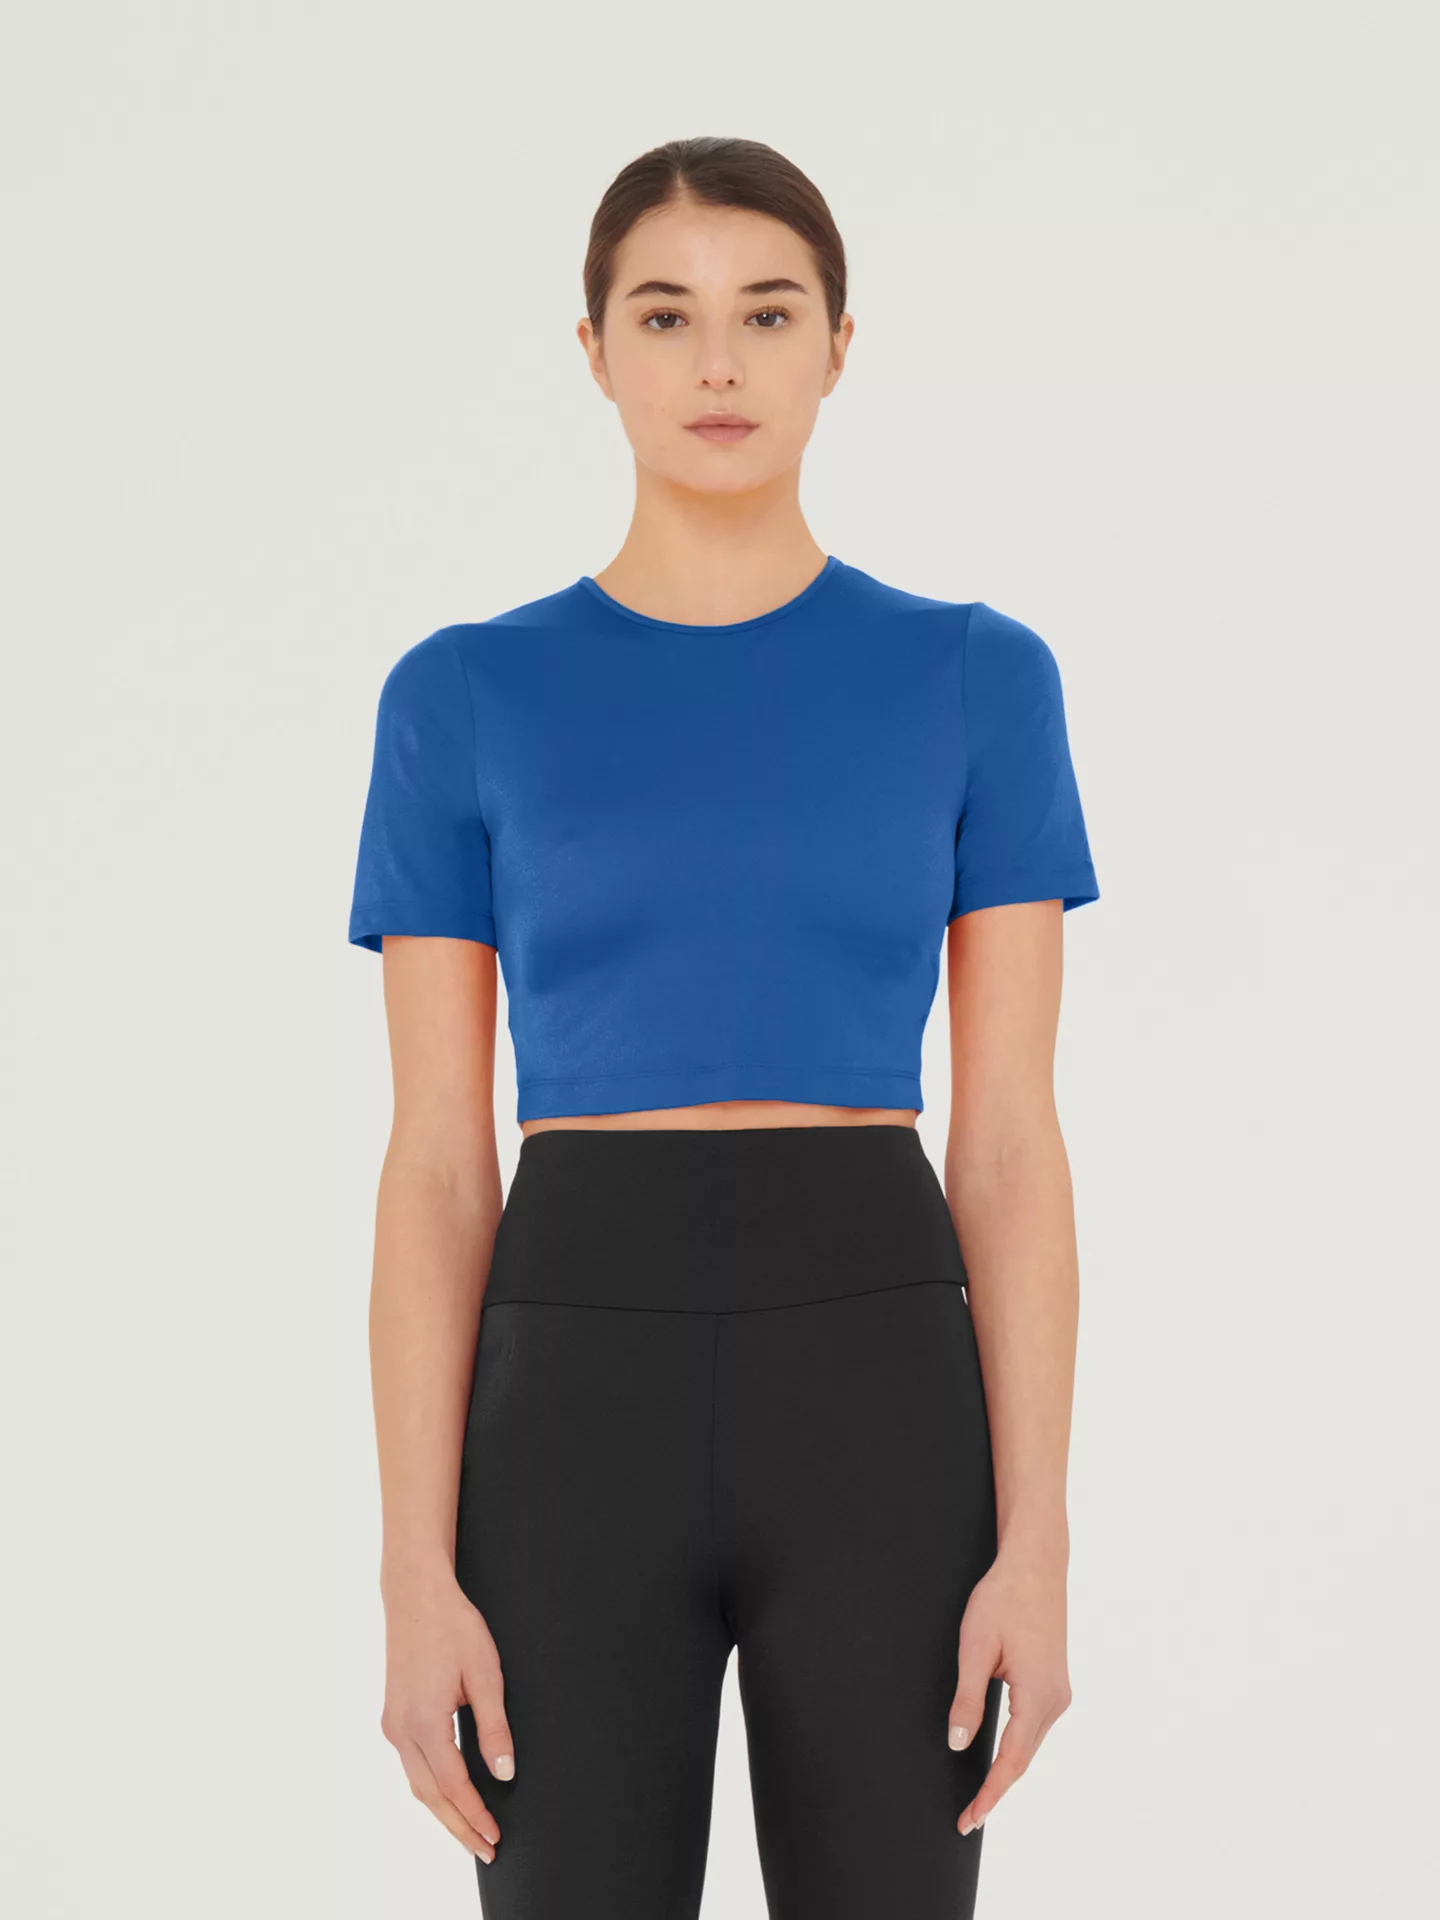 Wolford - The Workout Top Short Sleeves, Frau, sodalite blue, Größe: M günstig online kaufen